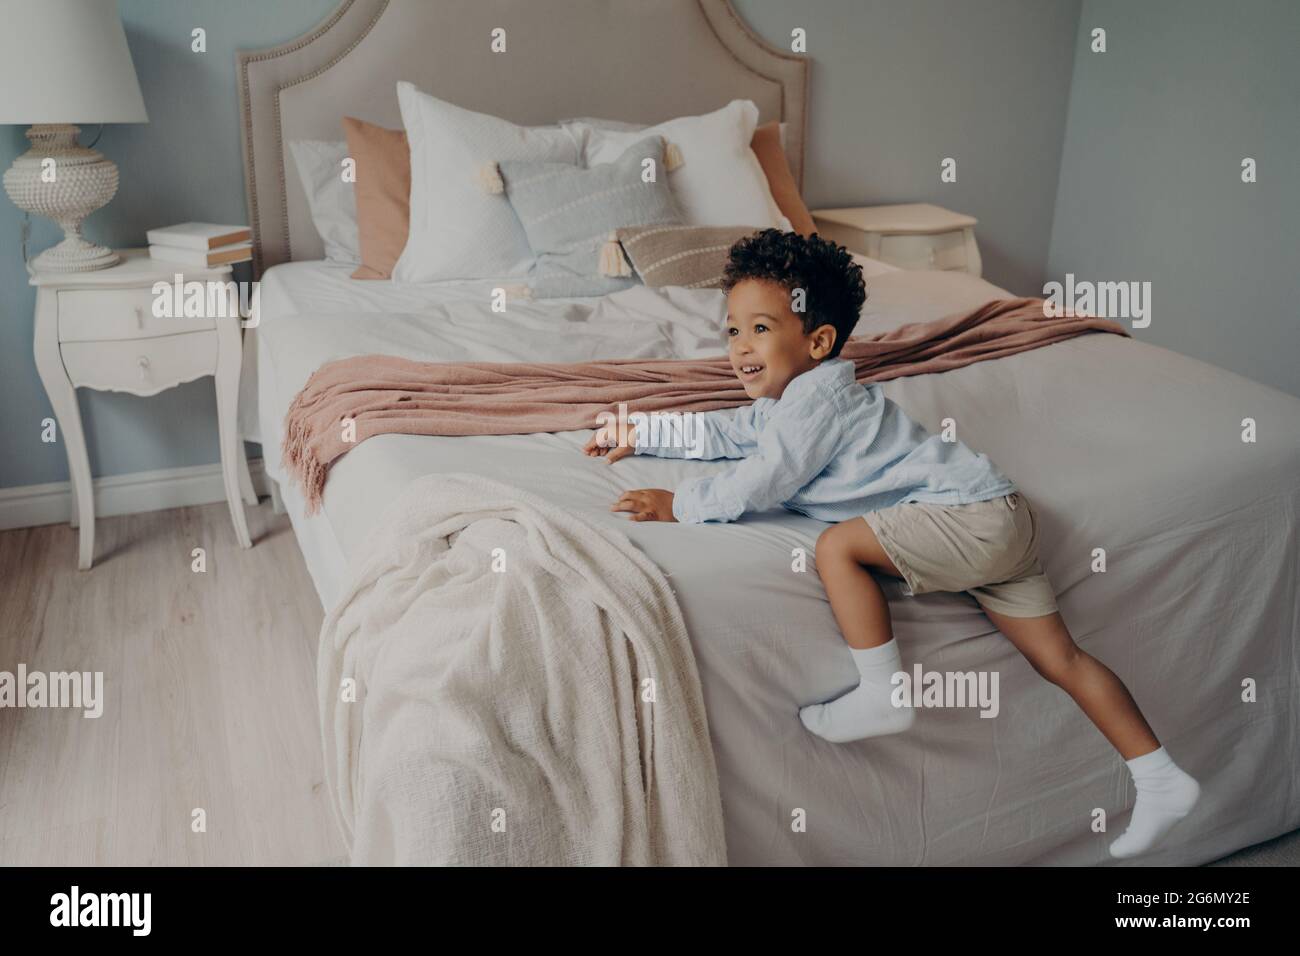 Fröhliches kleines afroamerikanisches Kind, das drinnen auf dem Bett spielerisch ist Stockfoto